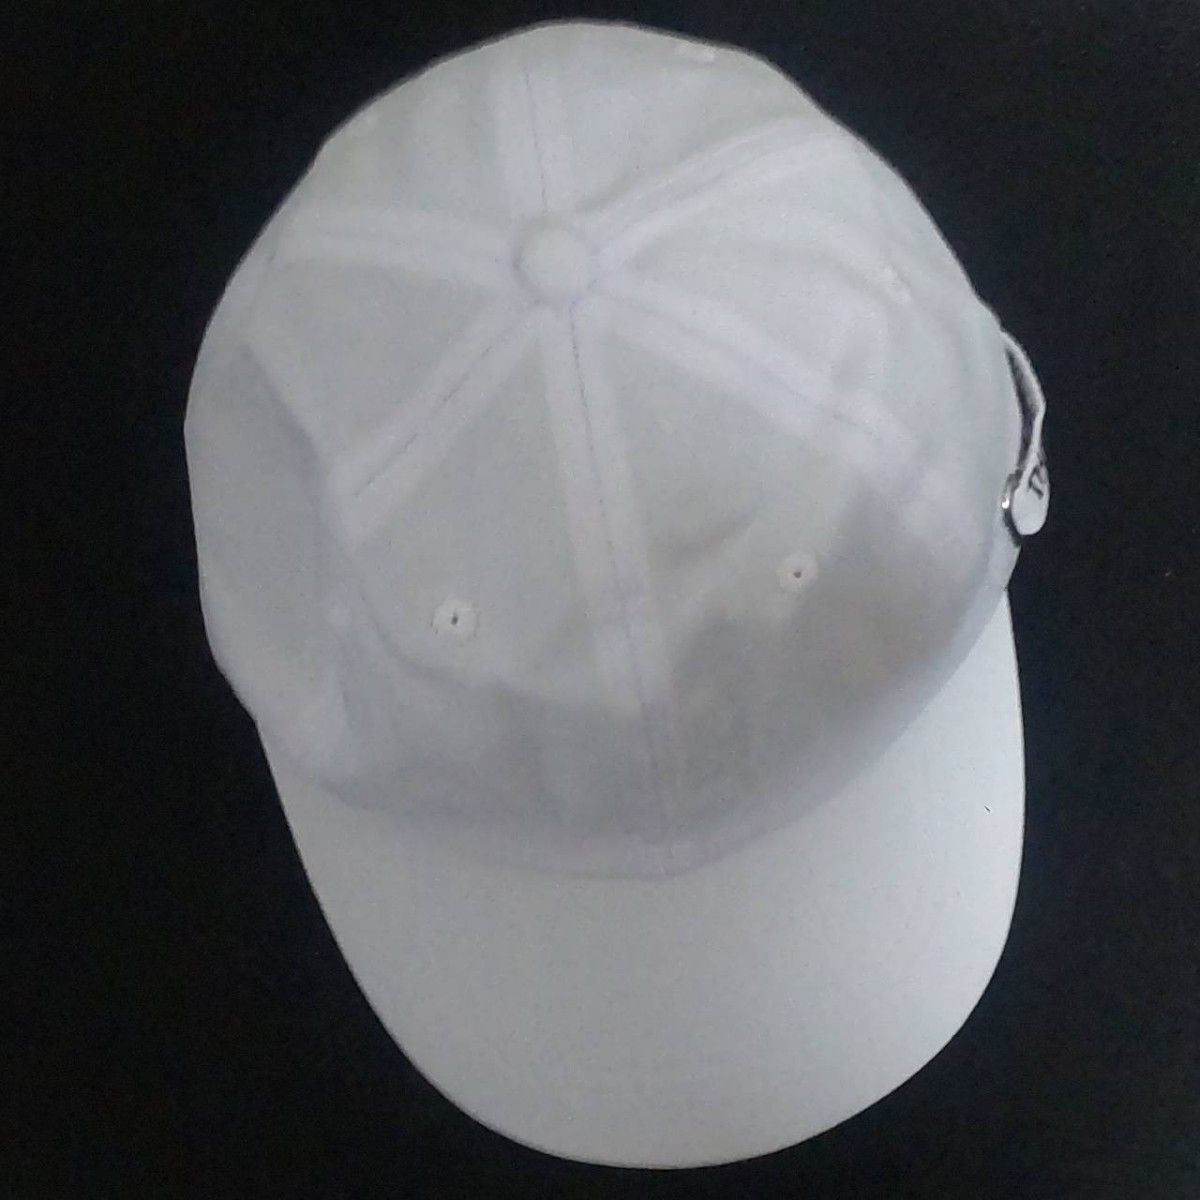 白 大きめ キャップ 帽子 韓国 ロゴ 男女兼用 紫外線対策 シンプル